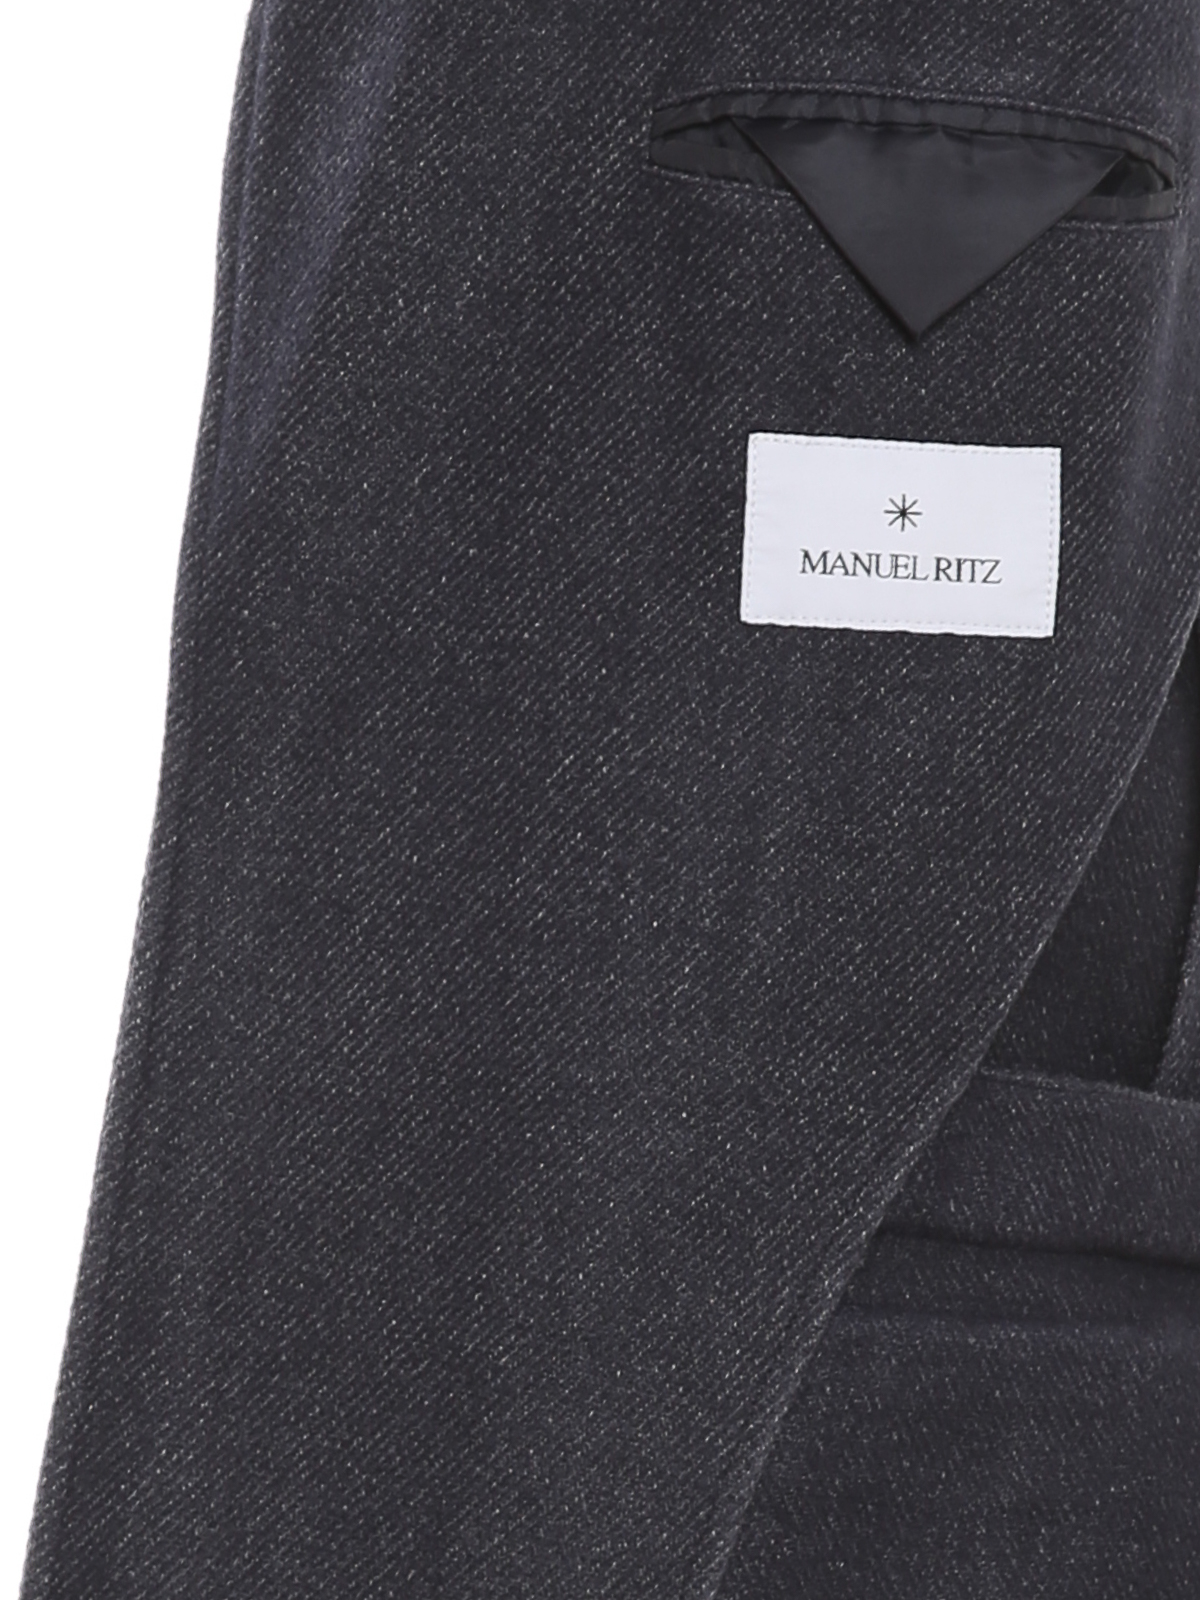 Manuel Ritz Wool Coat in Black for Men Mens Clothing Coats Short coats 